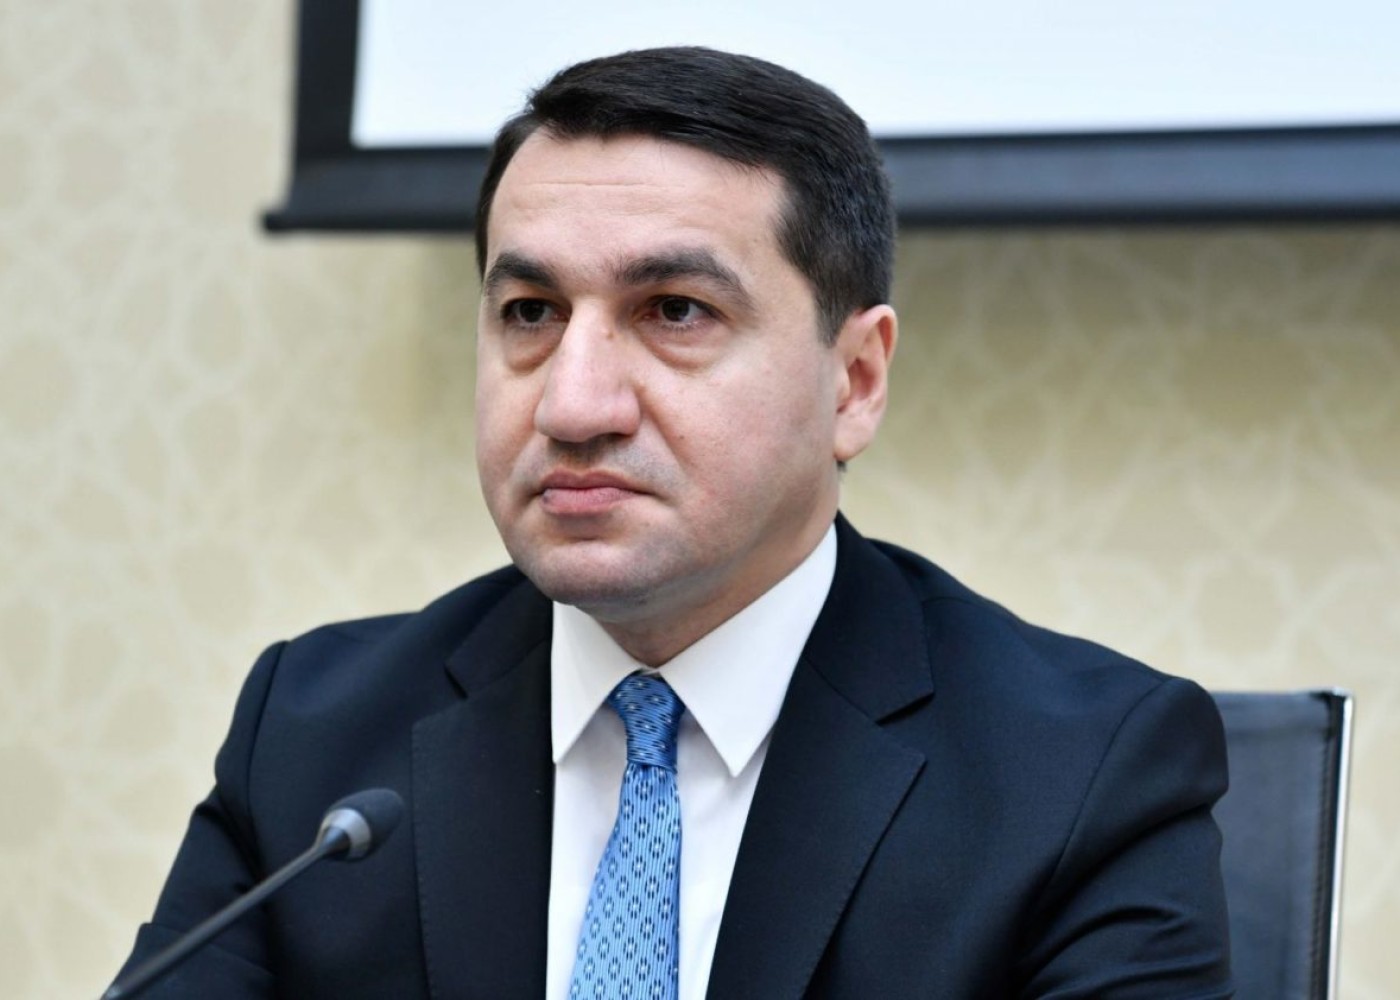 "Ermənistan geosiyasi oyunlardan çəkinməlidir" - Prezidentin köməkçisi